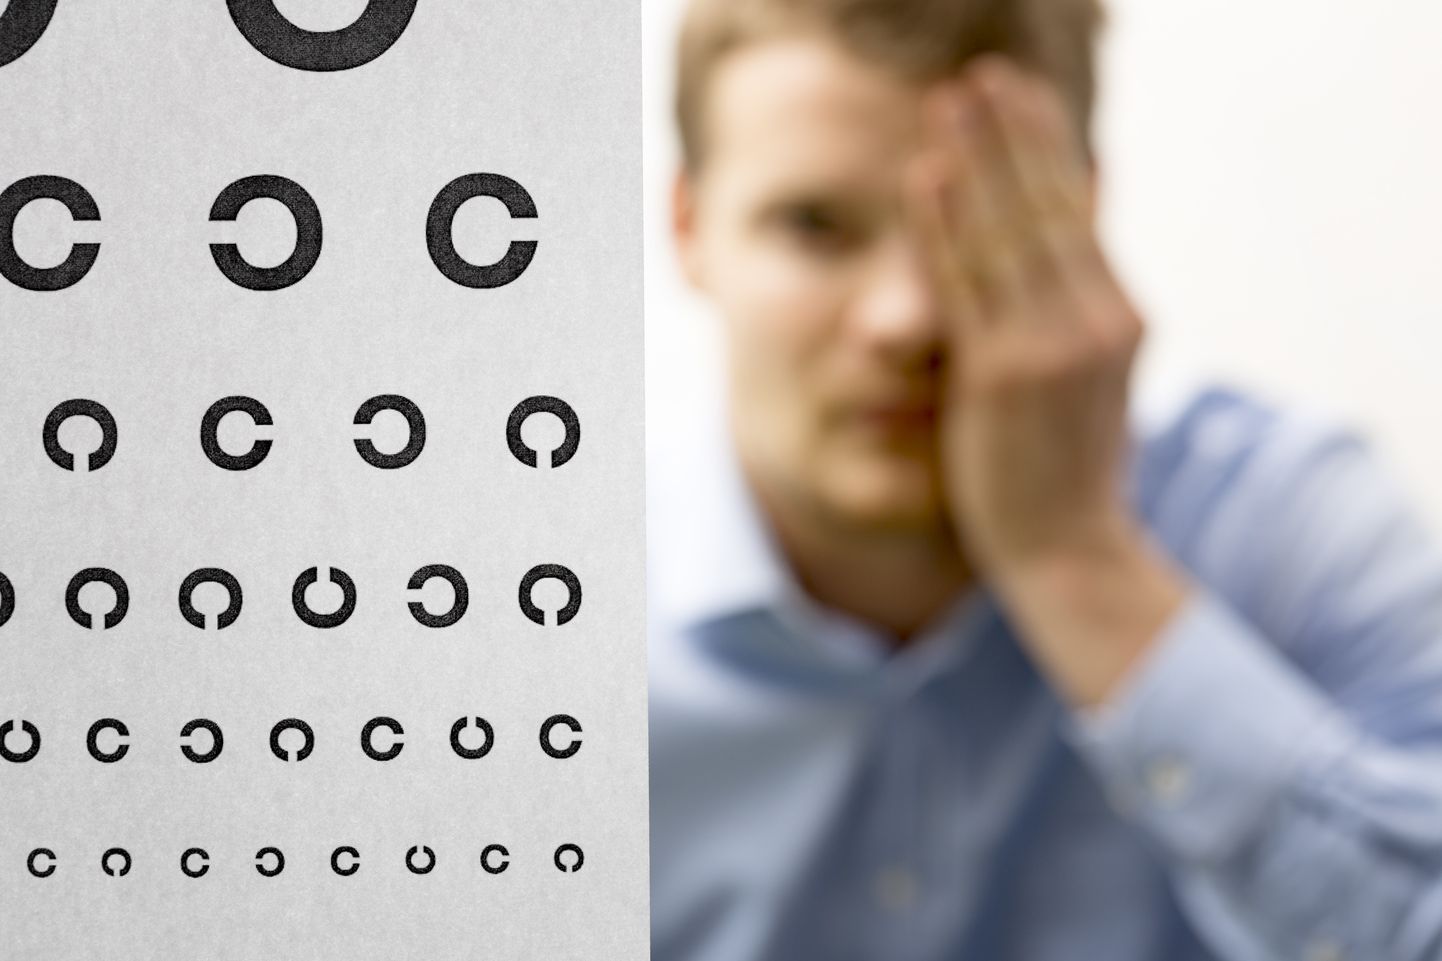 Diabeetiline retinopaatia tekitab silmanägemise halvenemist ning ravimata jätmisel ka pimedust.